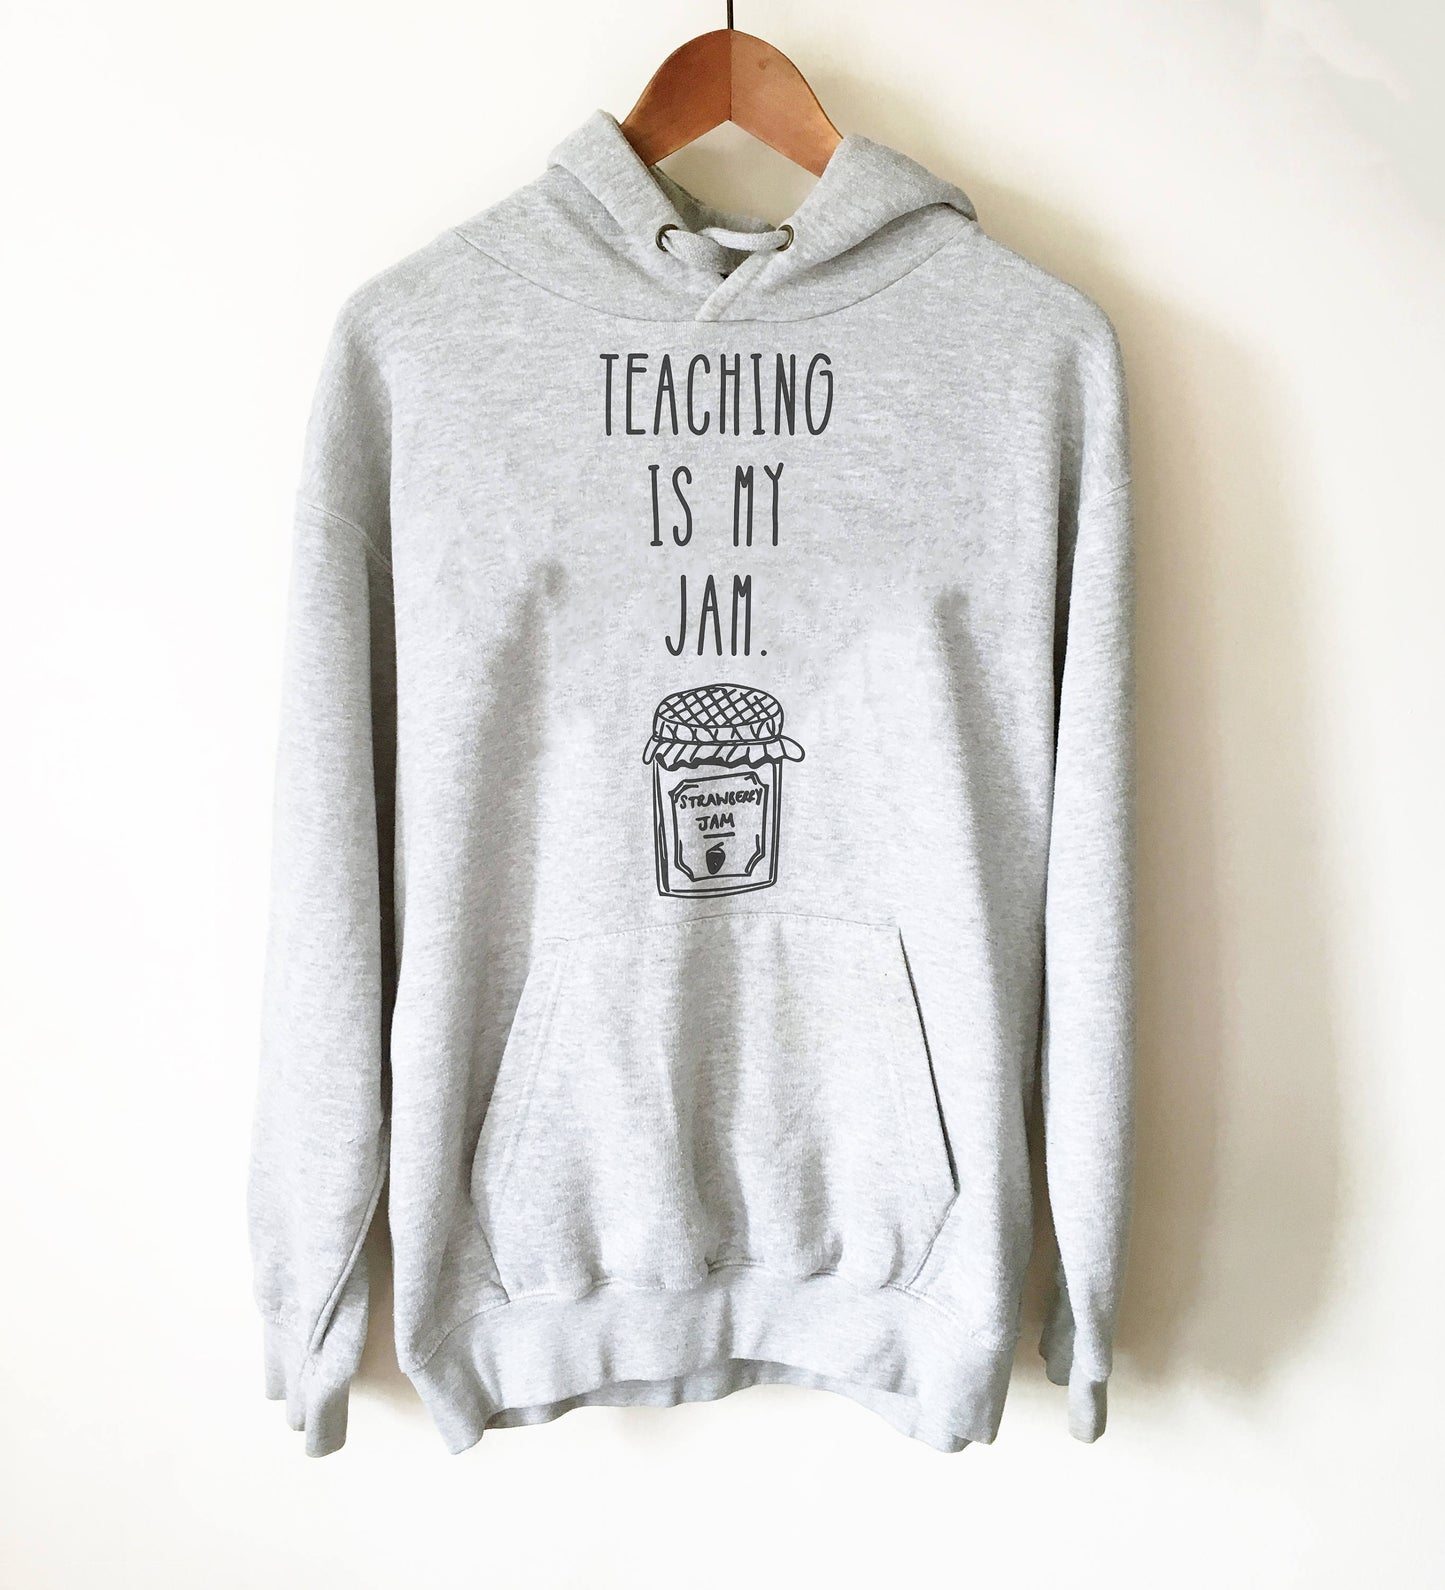 Teaching Is My Jam Hoodie - English teacher gift, Funny teacher shirts, Teacher life shirt, Teacher shirts, Teacher life shirt